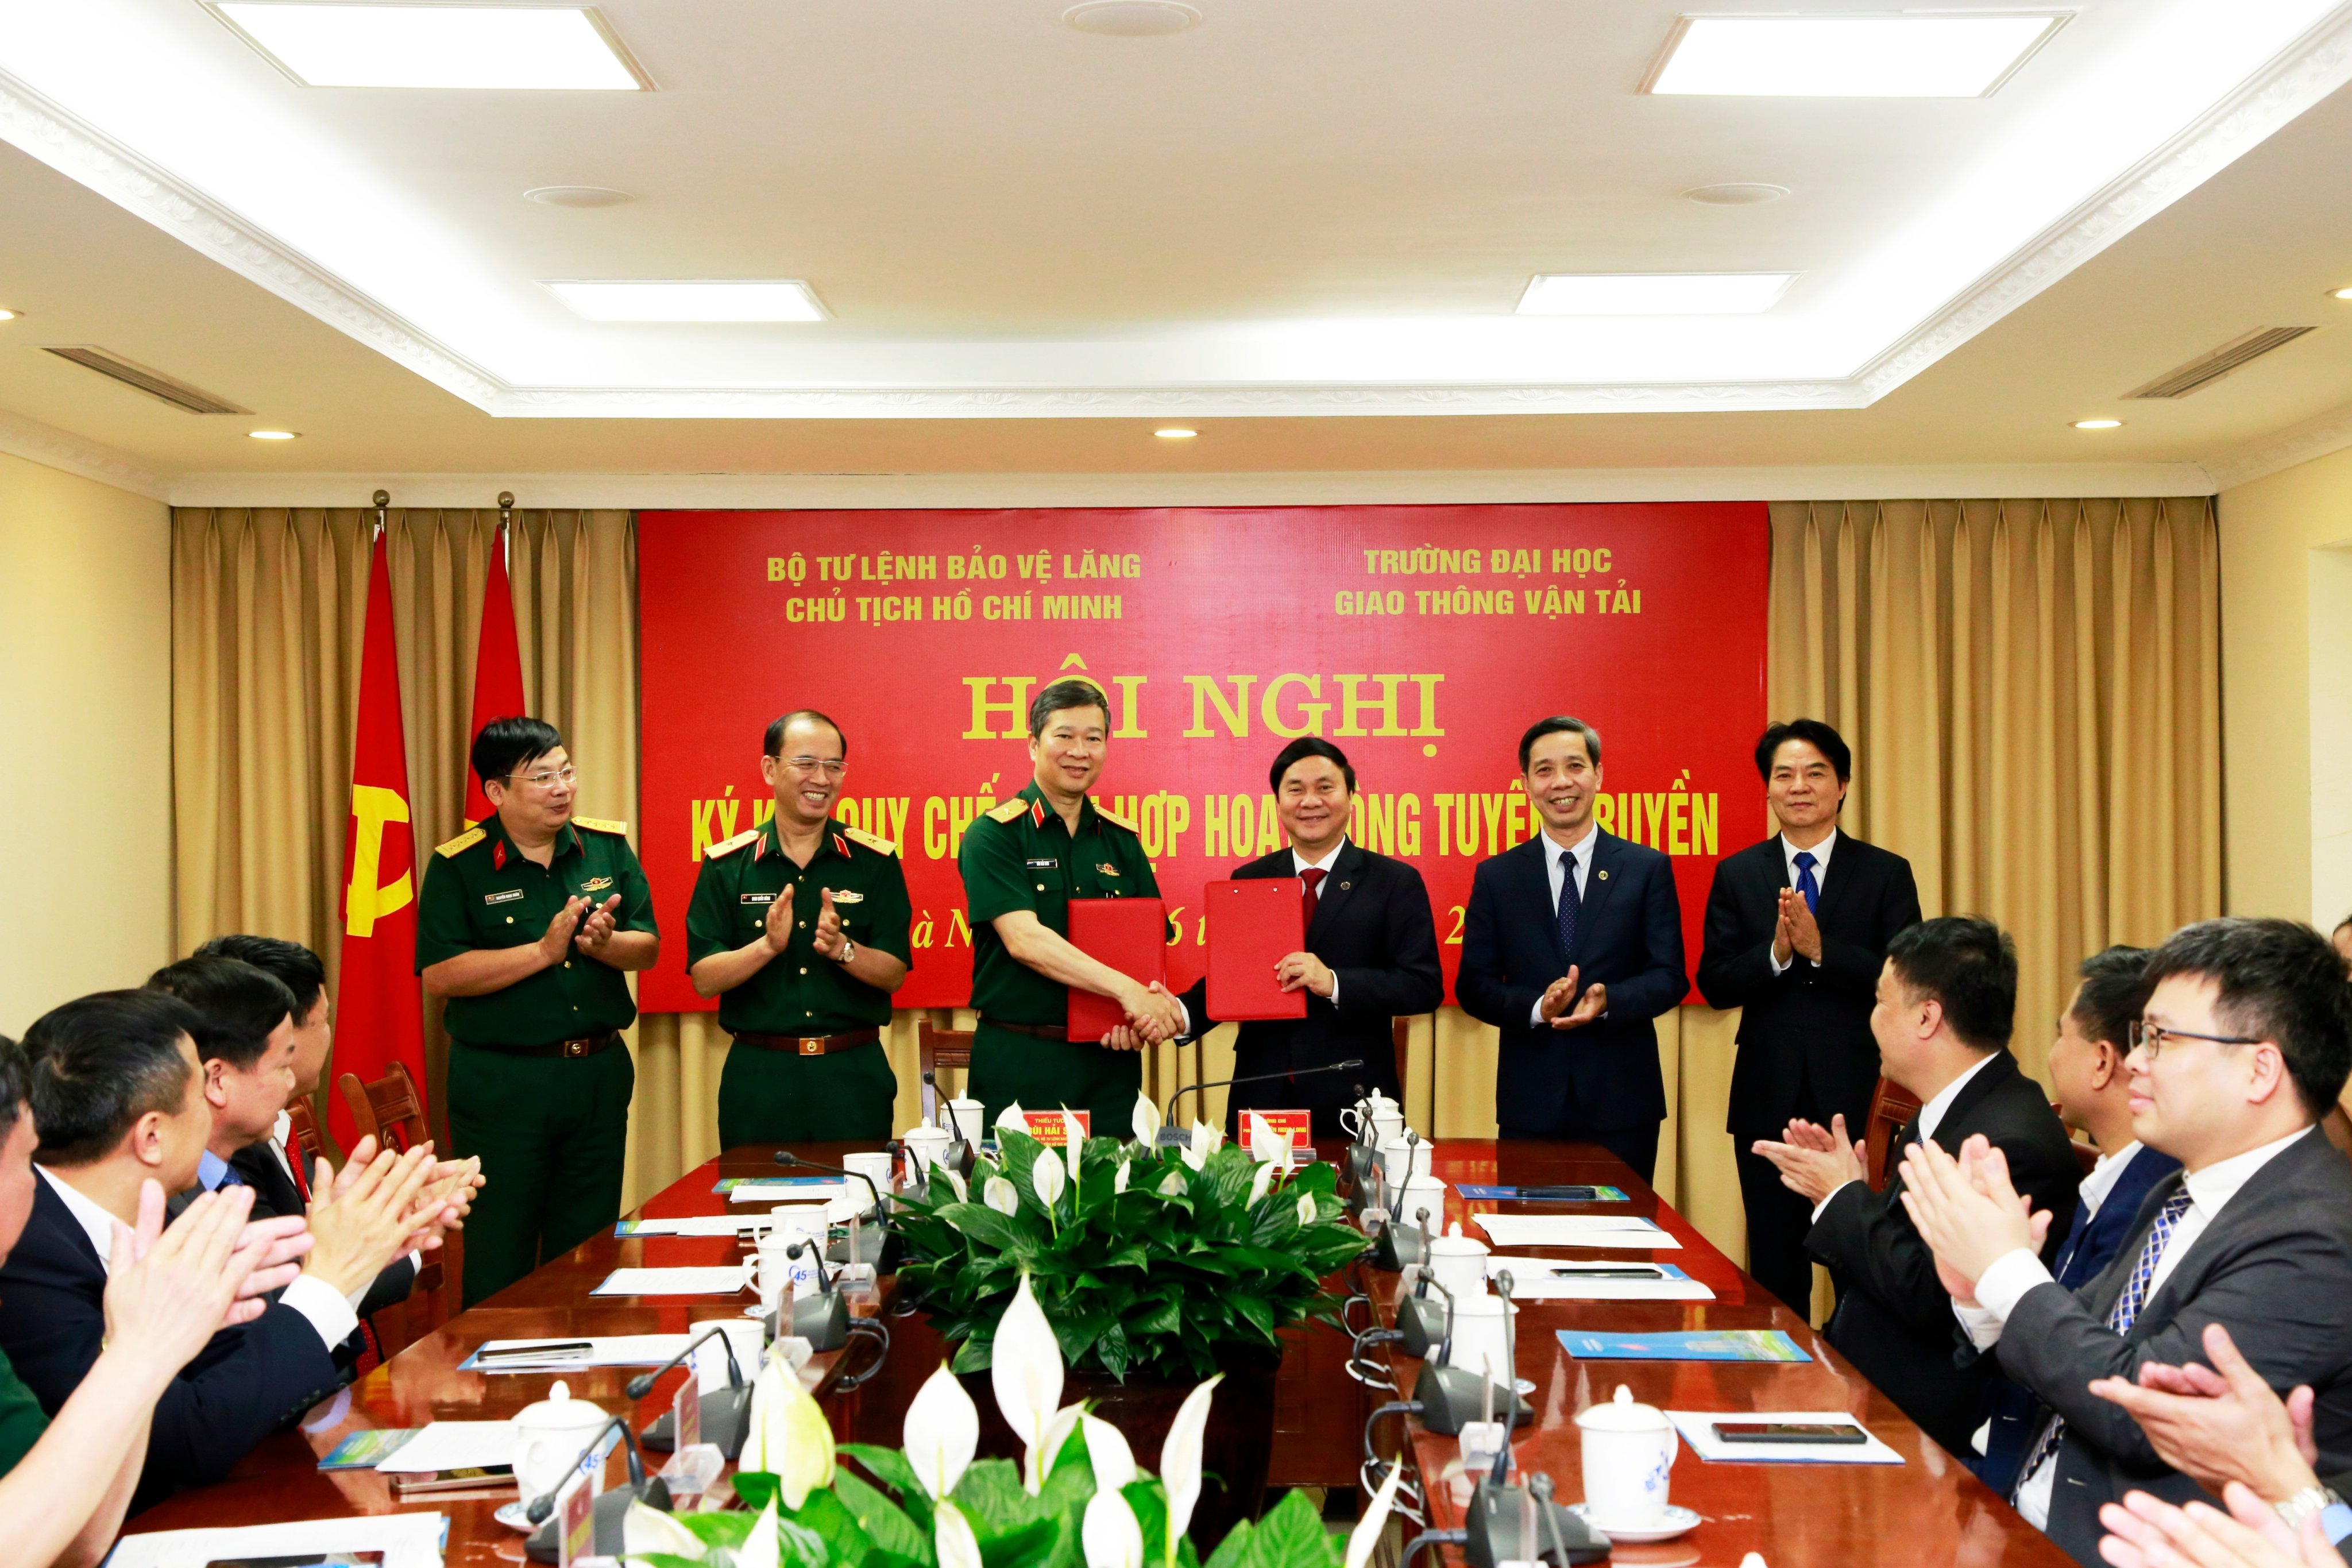 Lễ ký kết Quy chế phối hợp hoạt động tuyên truyền giữa Trường Đại học Giao thông vận tải với Bộ Tư lệnh Bảo vệ Lăng Chủ tịch Hồ Chí Minh